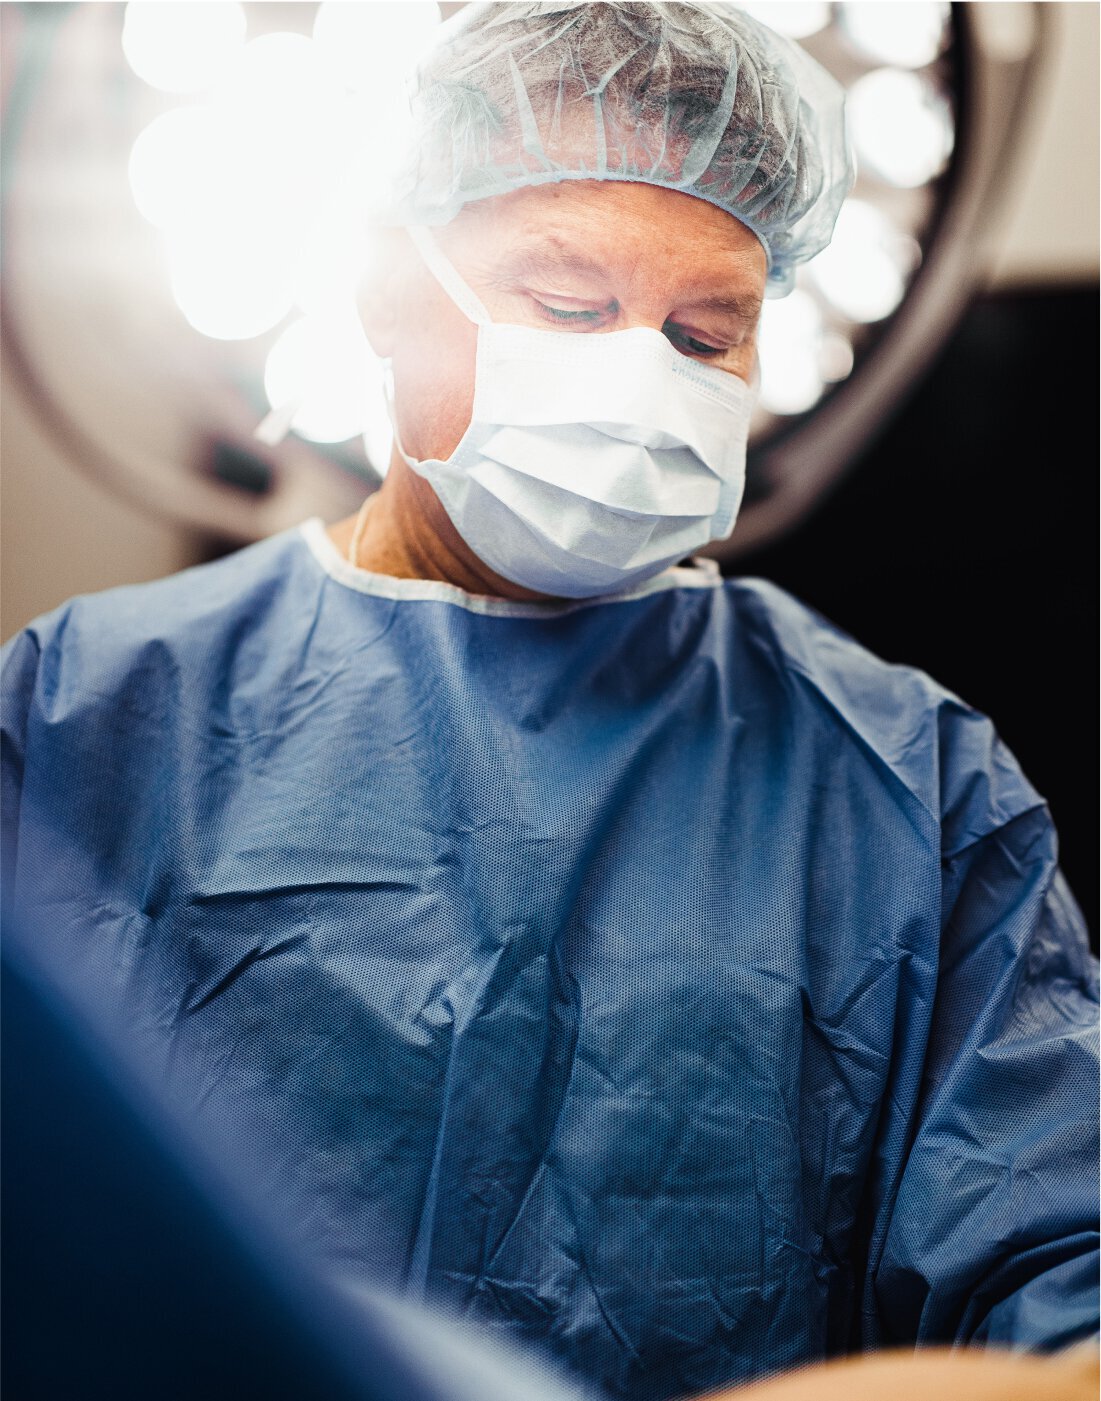 Austin Gynecomastia surgeon performing surgery